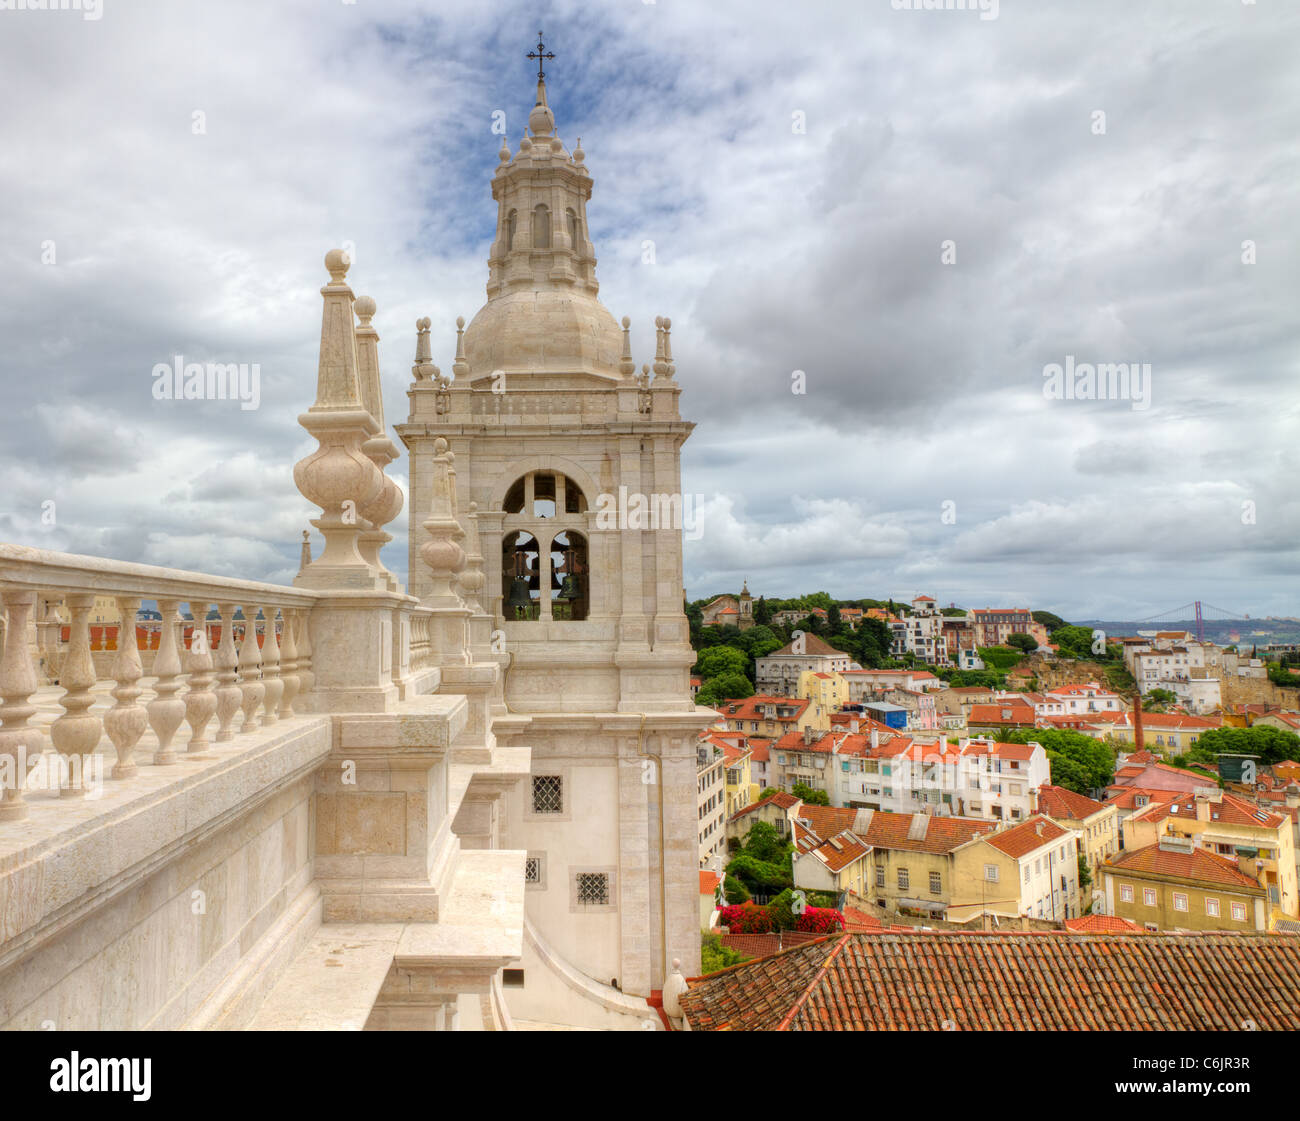 Tetto bianco con decorazioni e la torre campanaria in stile manieristico di Lisbona, Portogallo Foto Stock